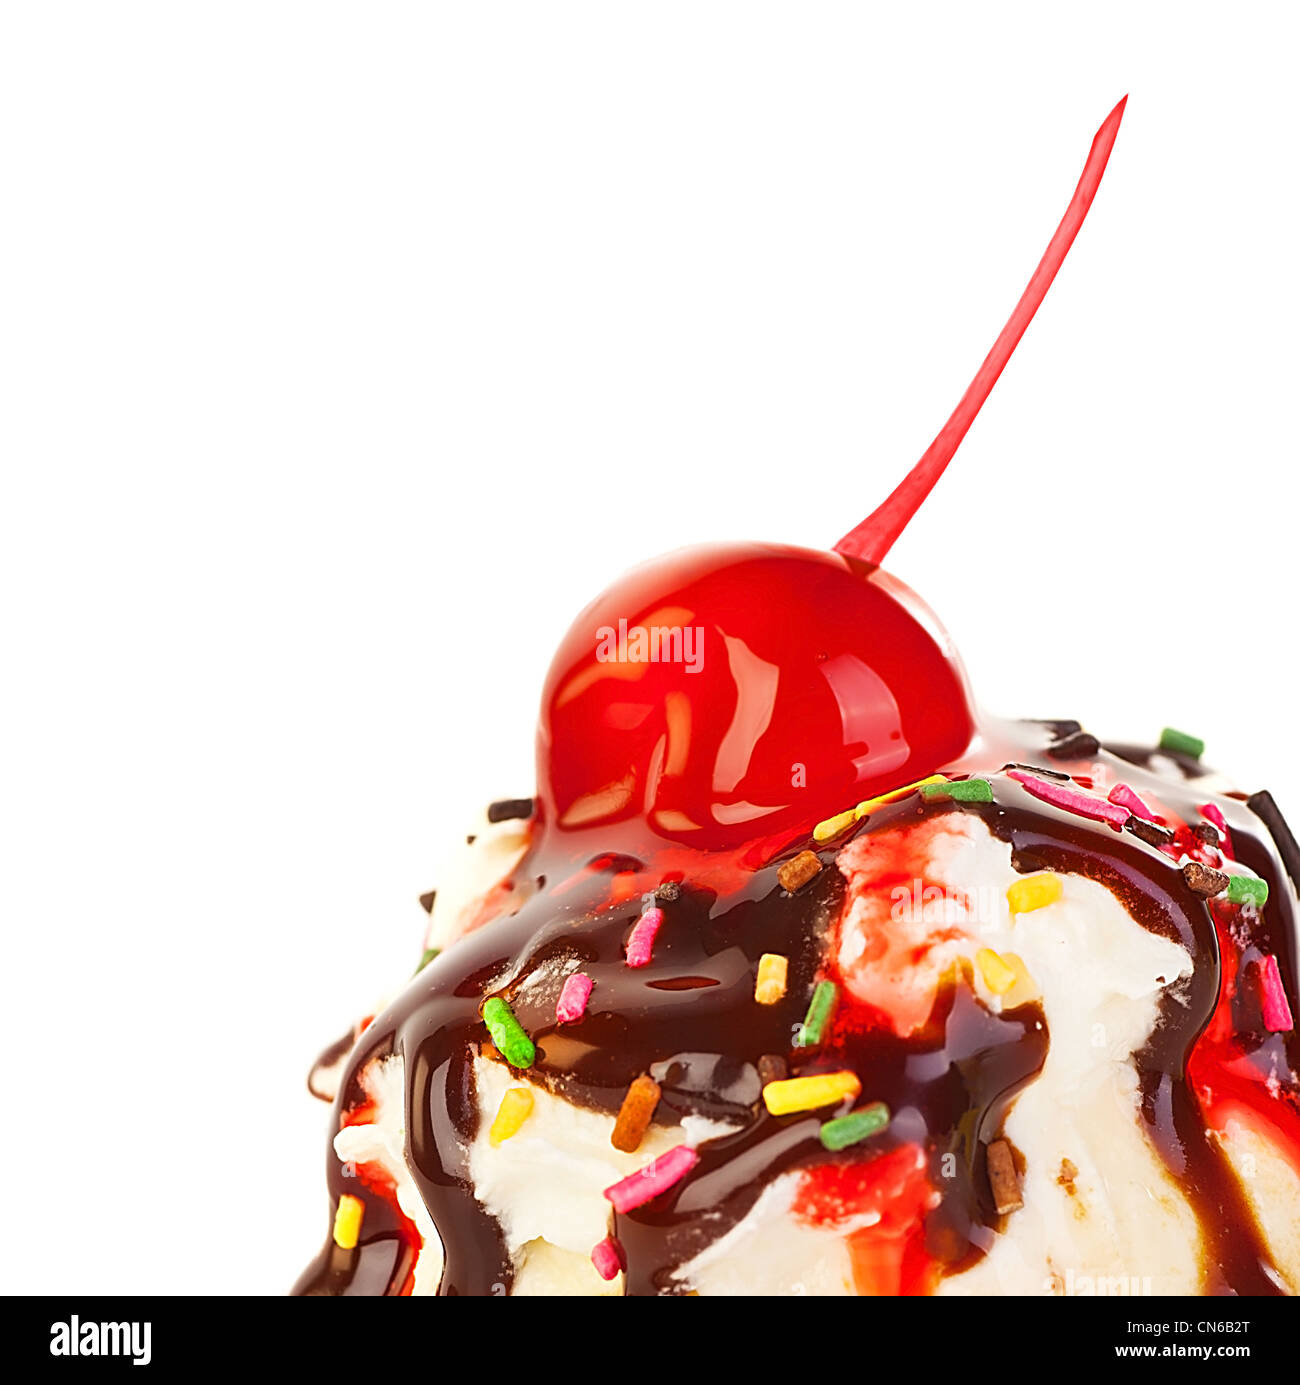 Eis-Grenze, gefrorenen süßen Joghurt garniert mit Schokolade und Erdbeer-Sirup, dekoriert mit Cherry berry Stockfoto